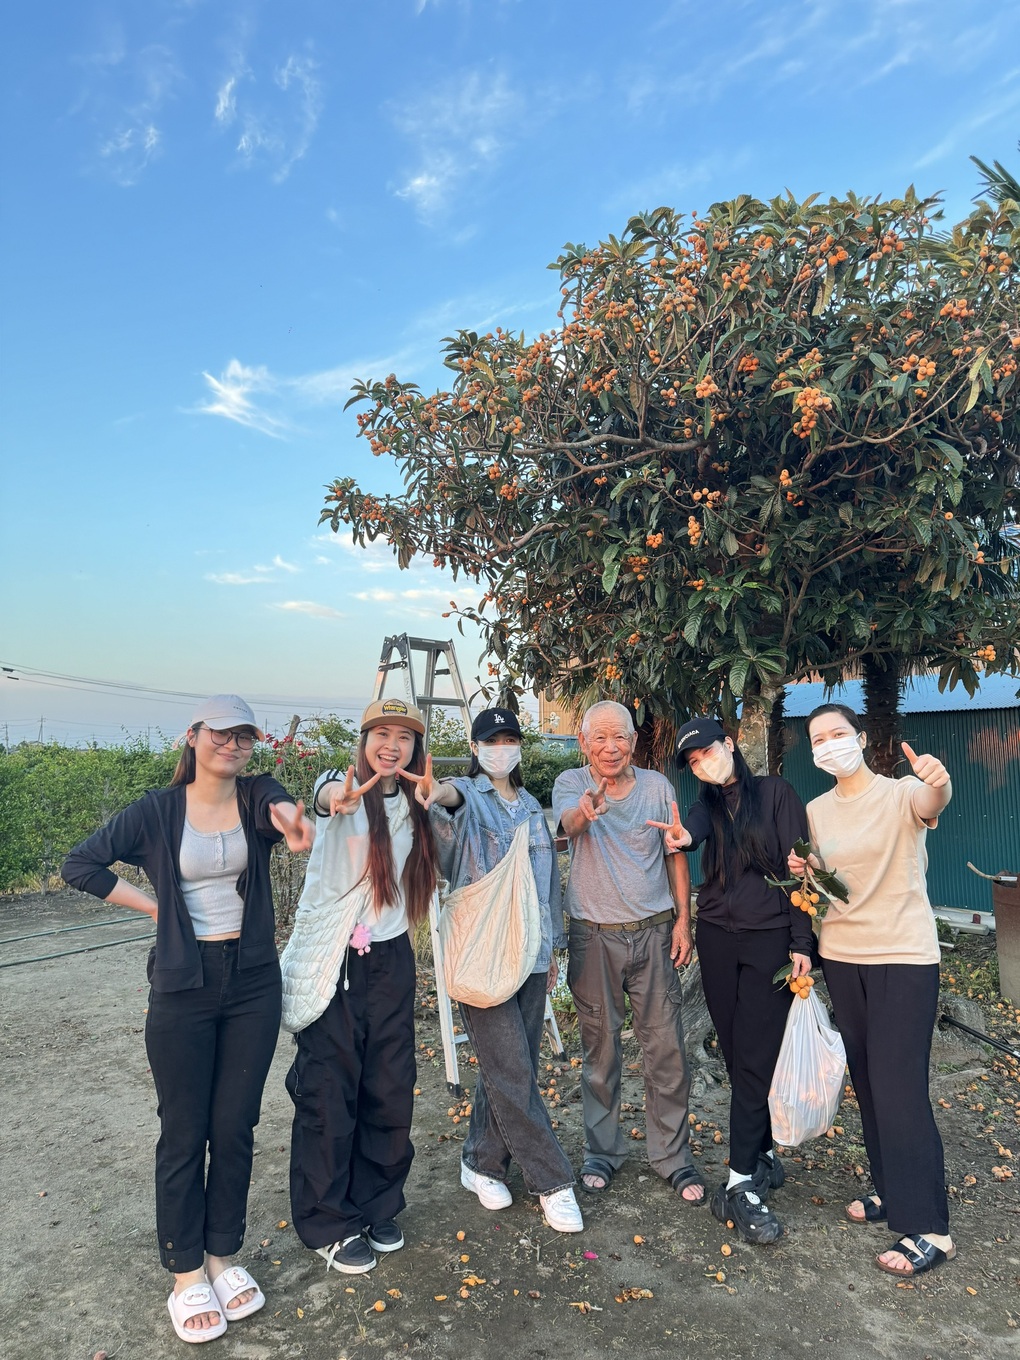 Khen cây nhót sai quả, lao động Việt ở Nhật sững sờ vì chủ nhà chặt cây - 3